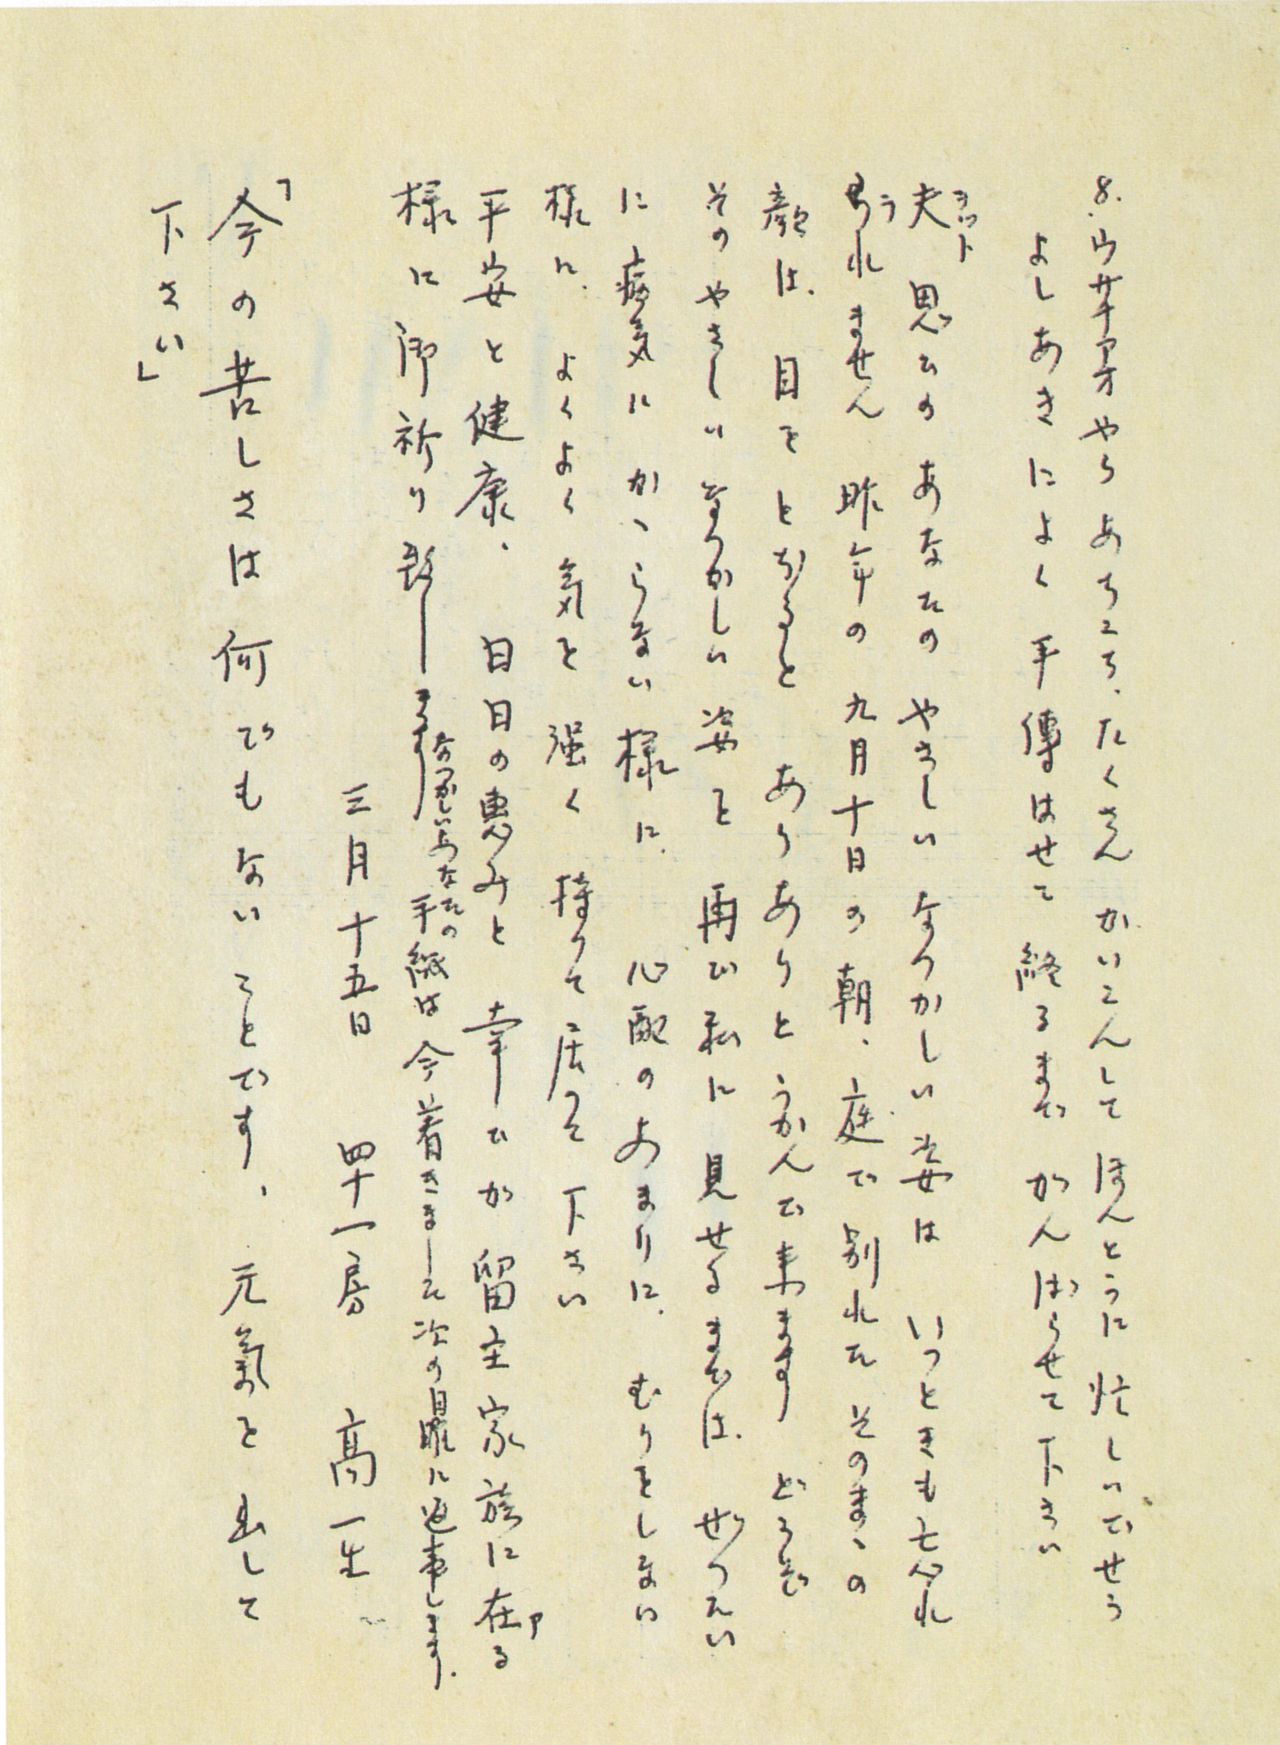 寫有片假名「ウサナアオ」（鄒語usa na a’o）的信件（1953年3月15日，出自《高一生獄中家書》）